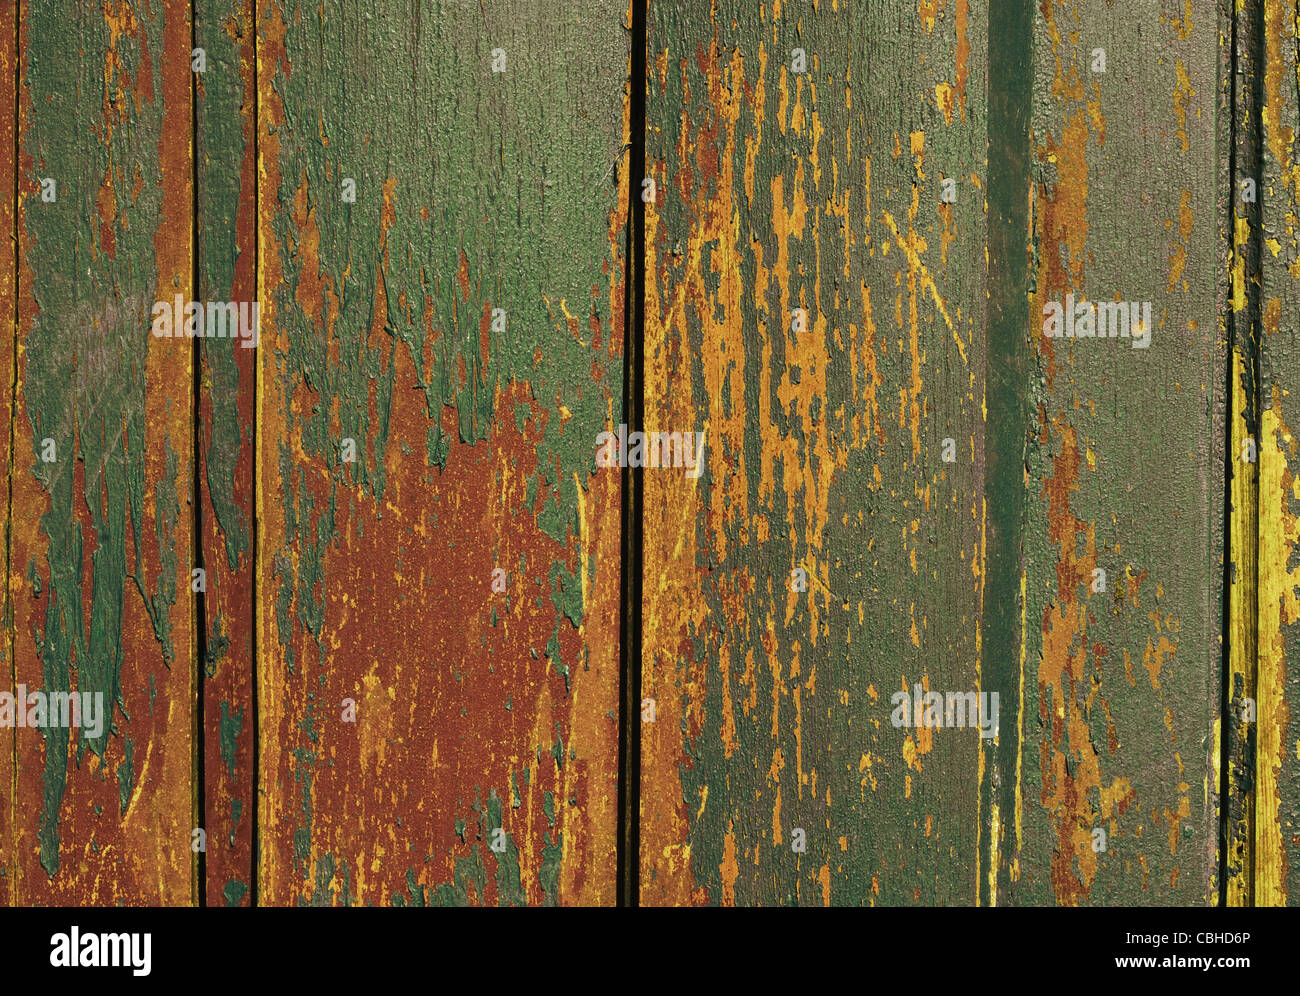 En bois vintage avec texture grunge peinture close up. Utile comme arrière-plan pour les travaux de conception. Banque D'Images